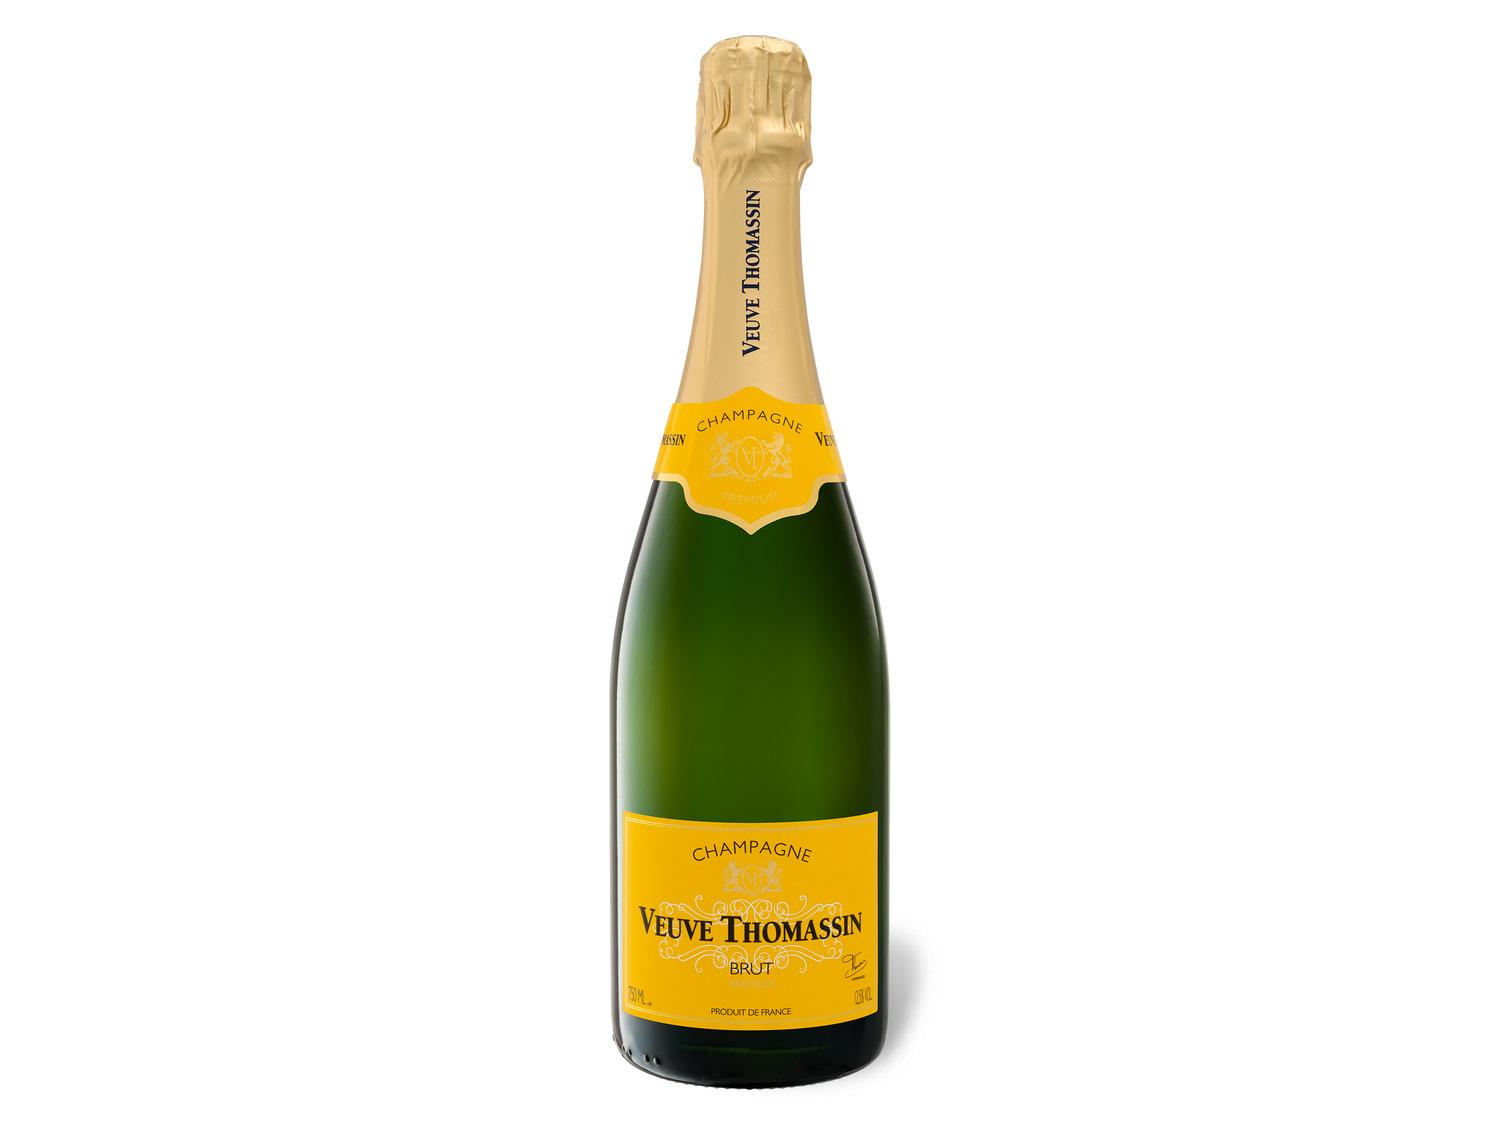 Veuve Thomassin brut, Champagner online kaufen | LIDL